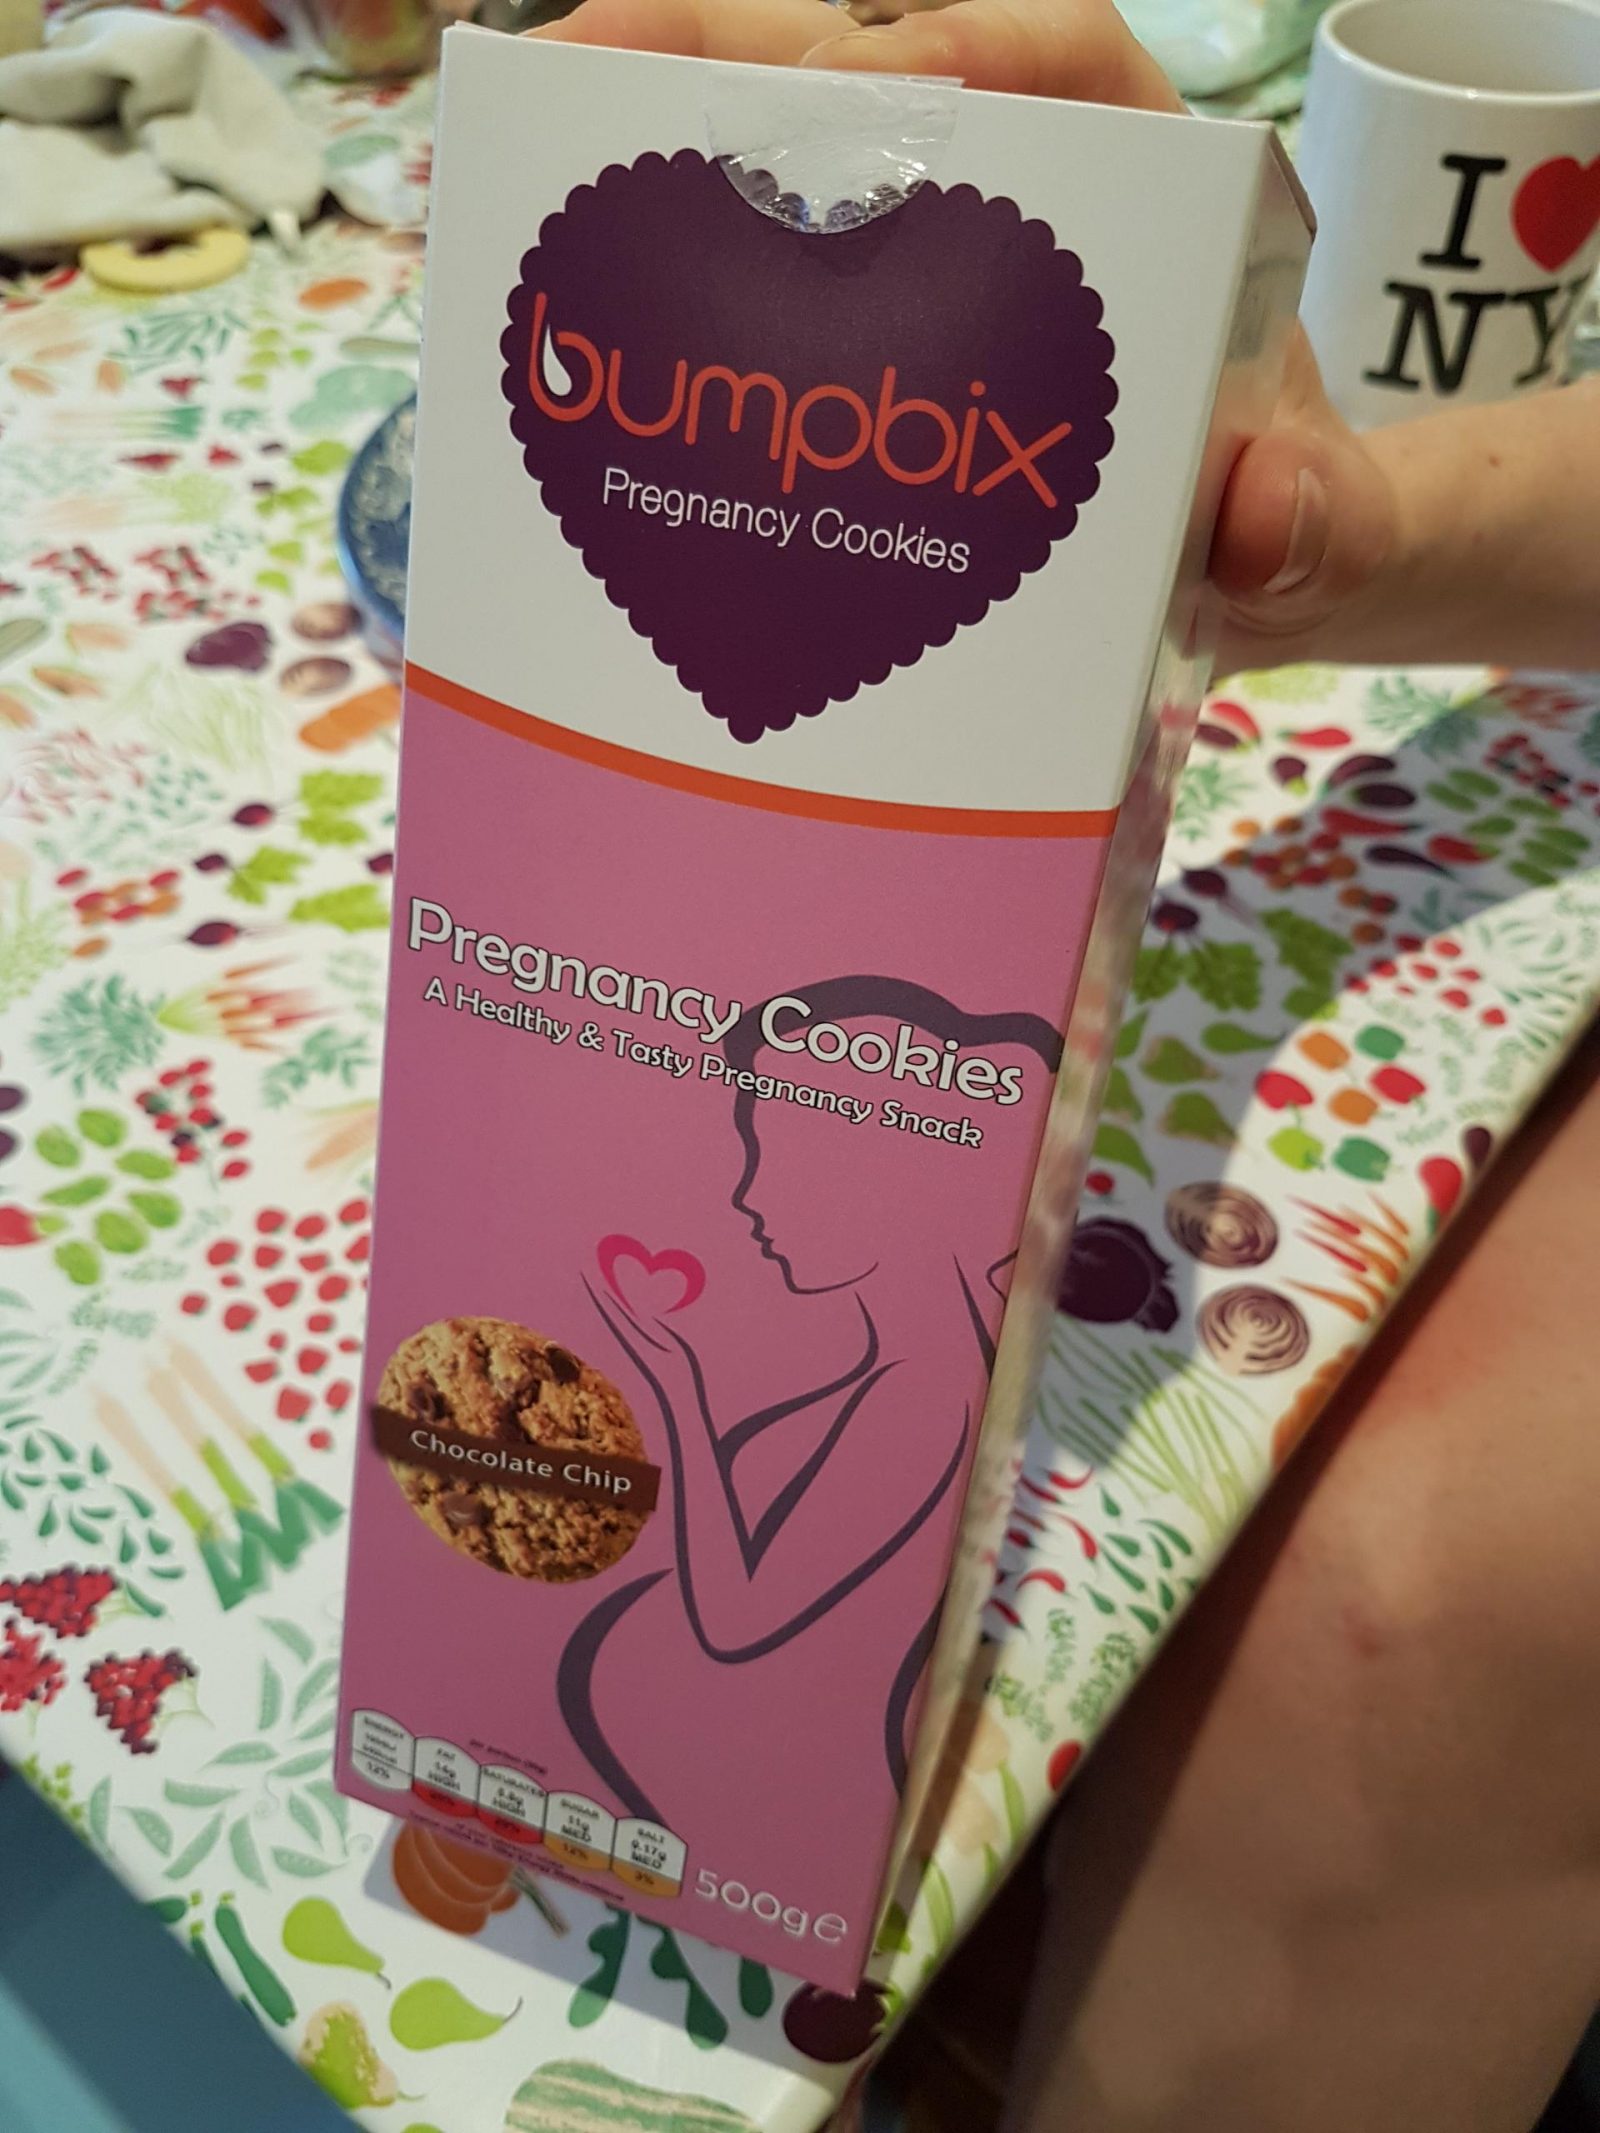 bumpbix pregnancy cookies